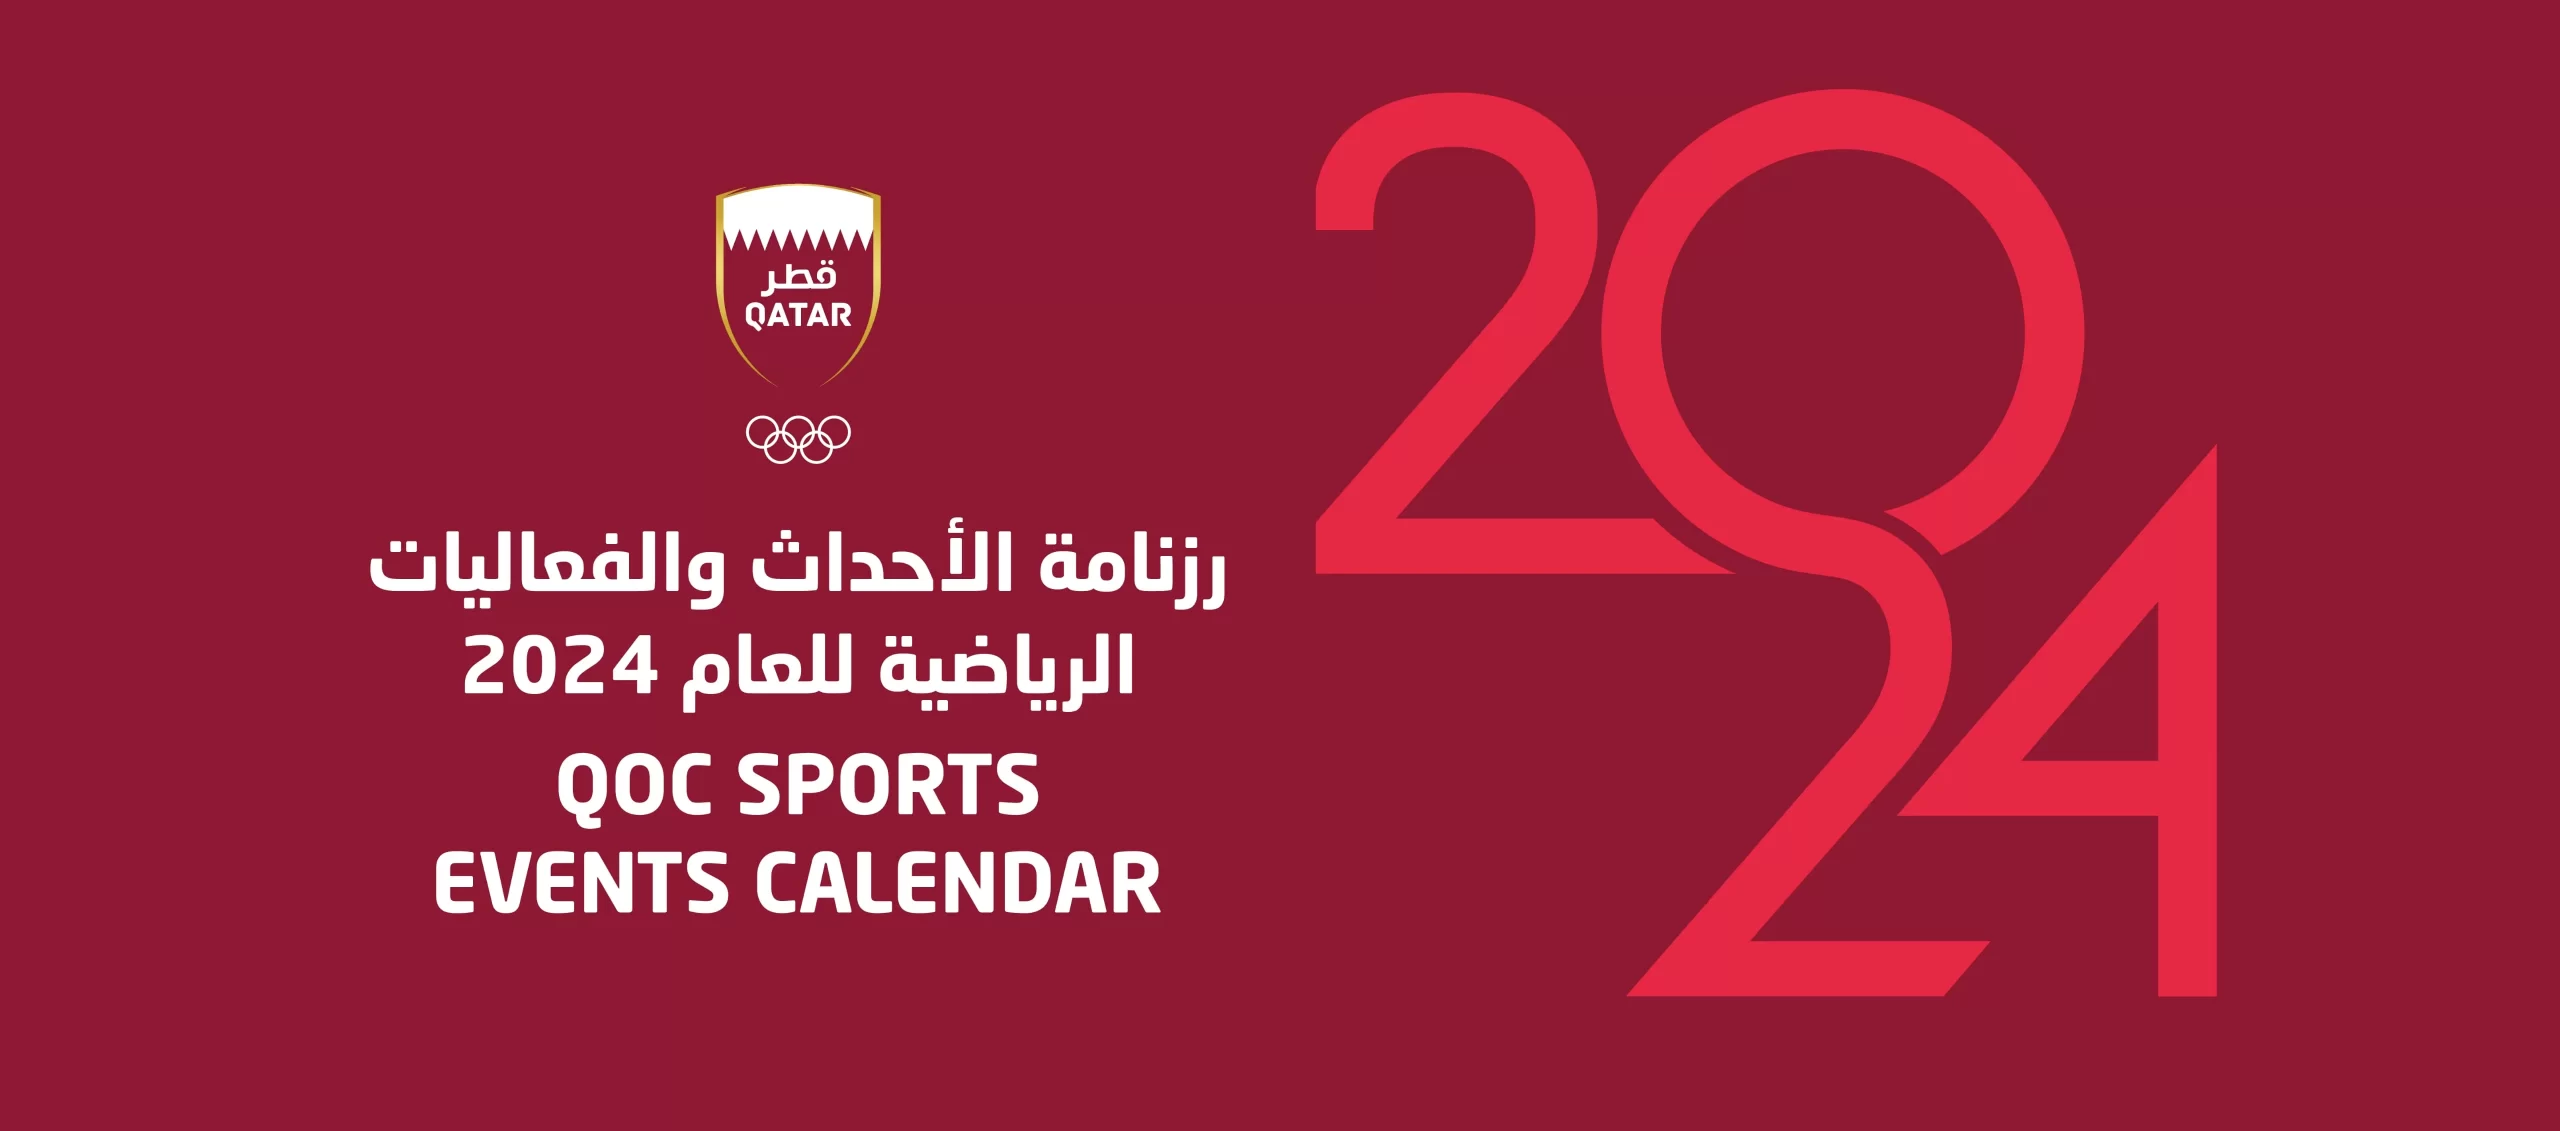 2024 Sport Events Calendar